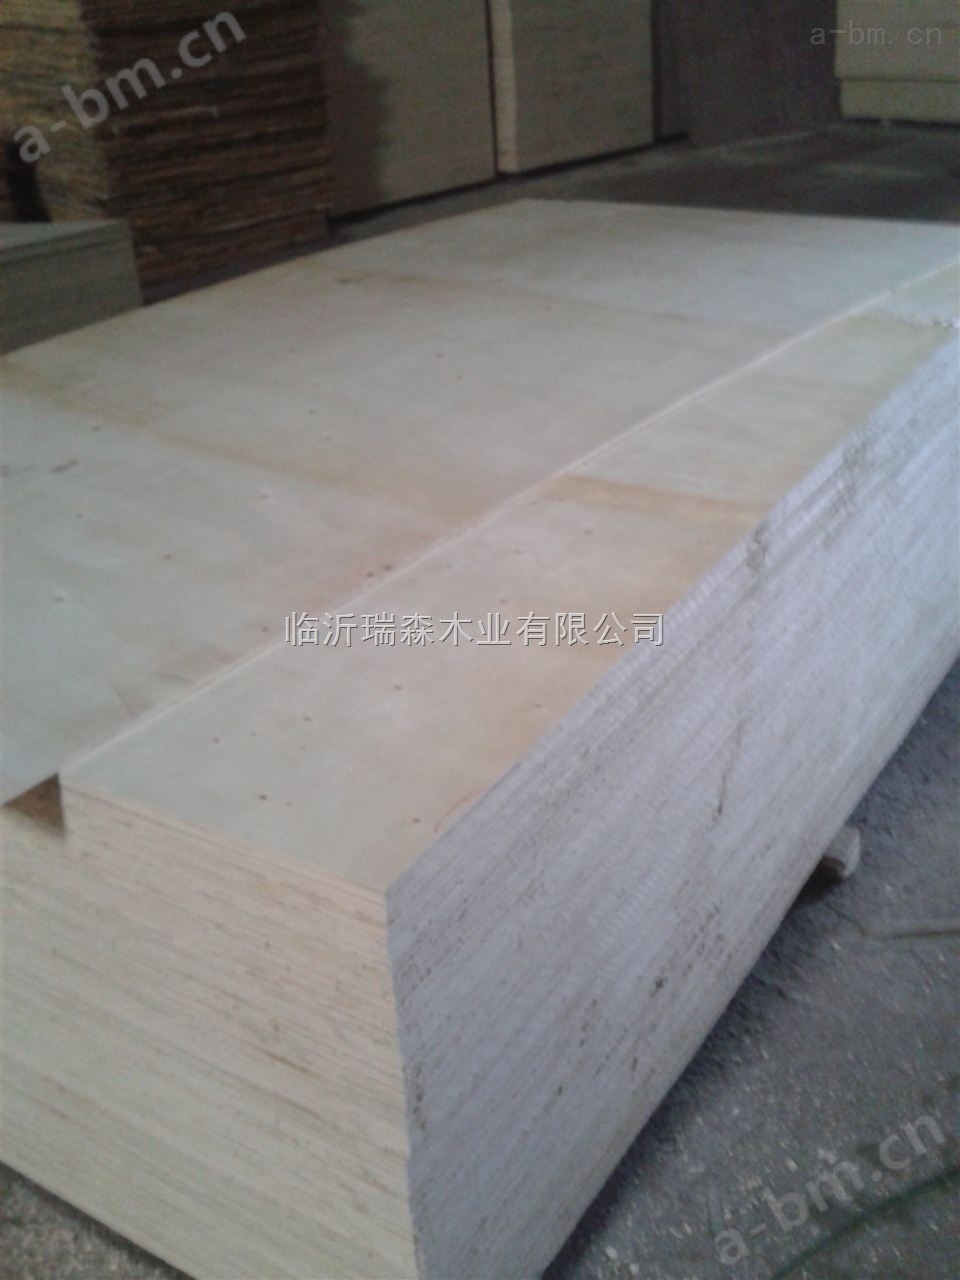 胶合板多层板三合板三夹板木板板材1220*2440*7mm